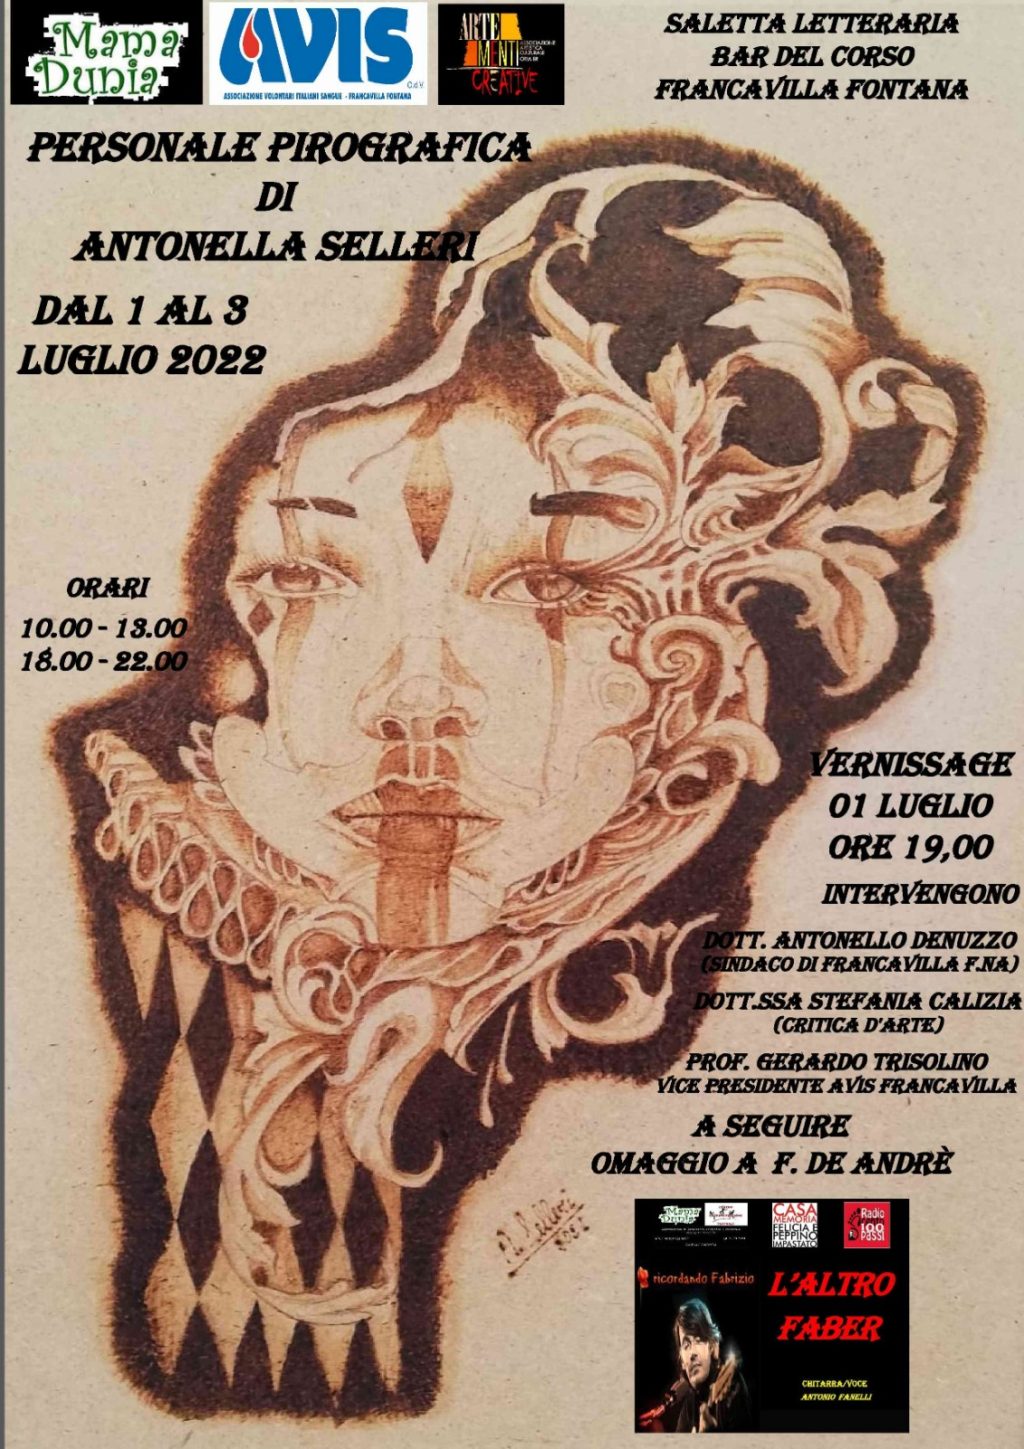 Locandina della mostra di Antonella Selleri che si terrà a Francavilla Fontana dal 1-2-3 Luglio. che si terrà